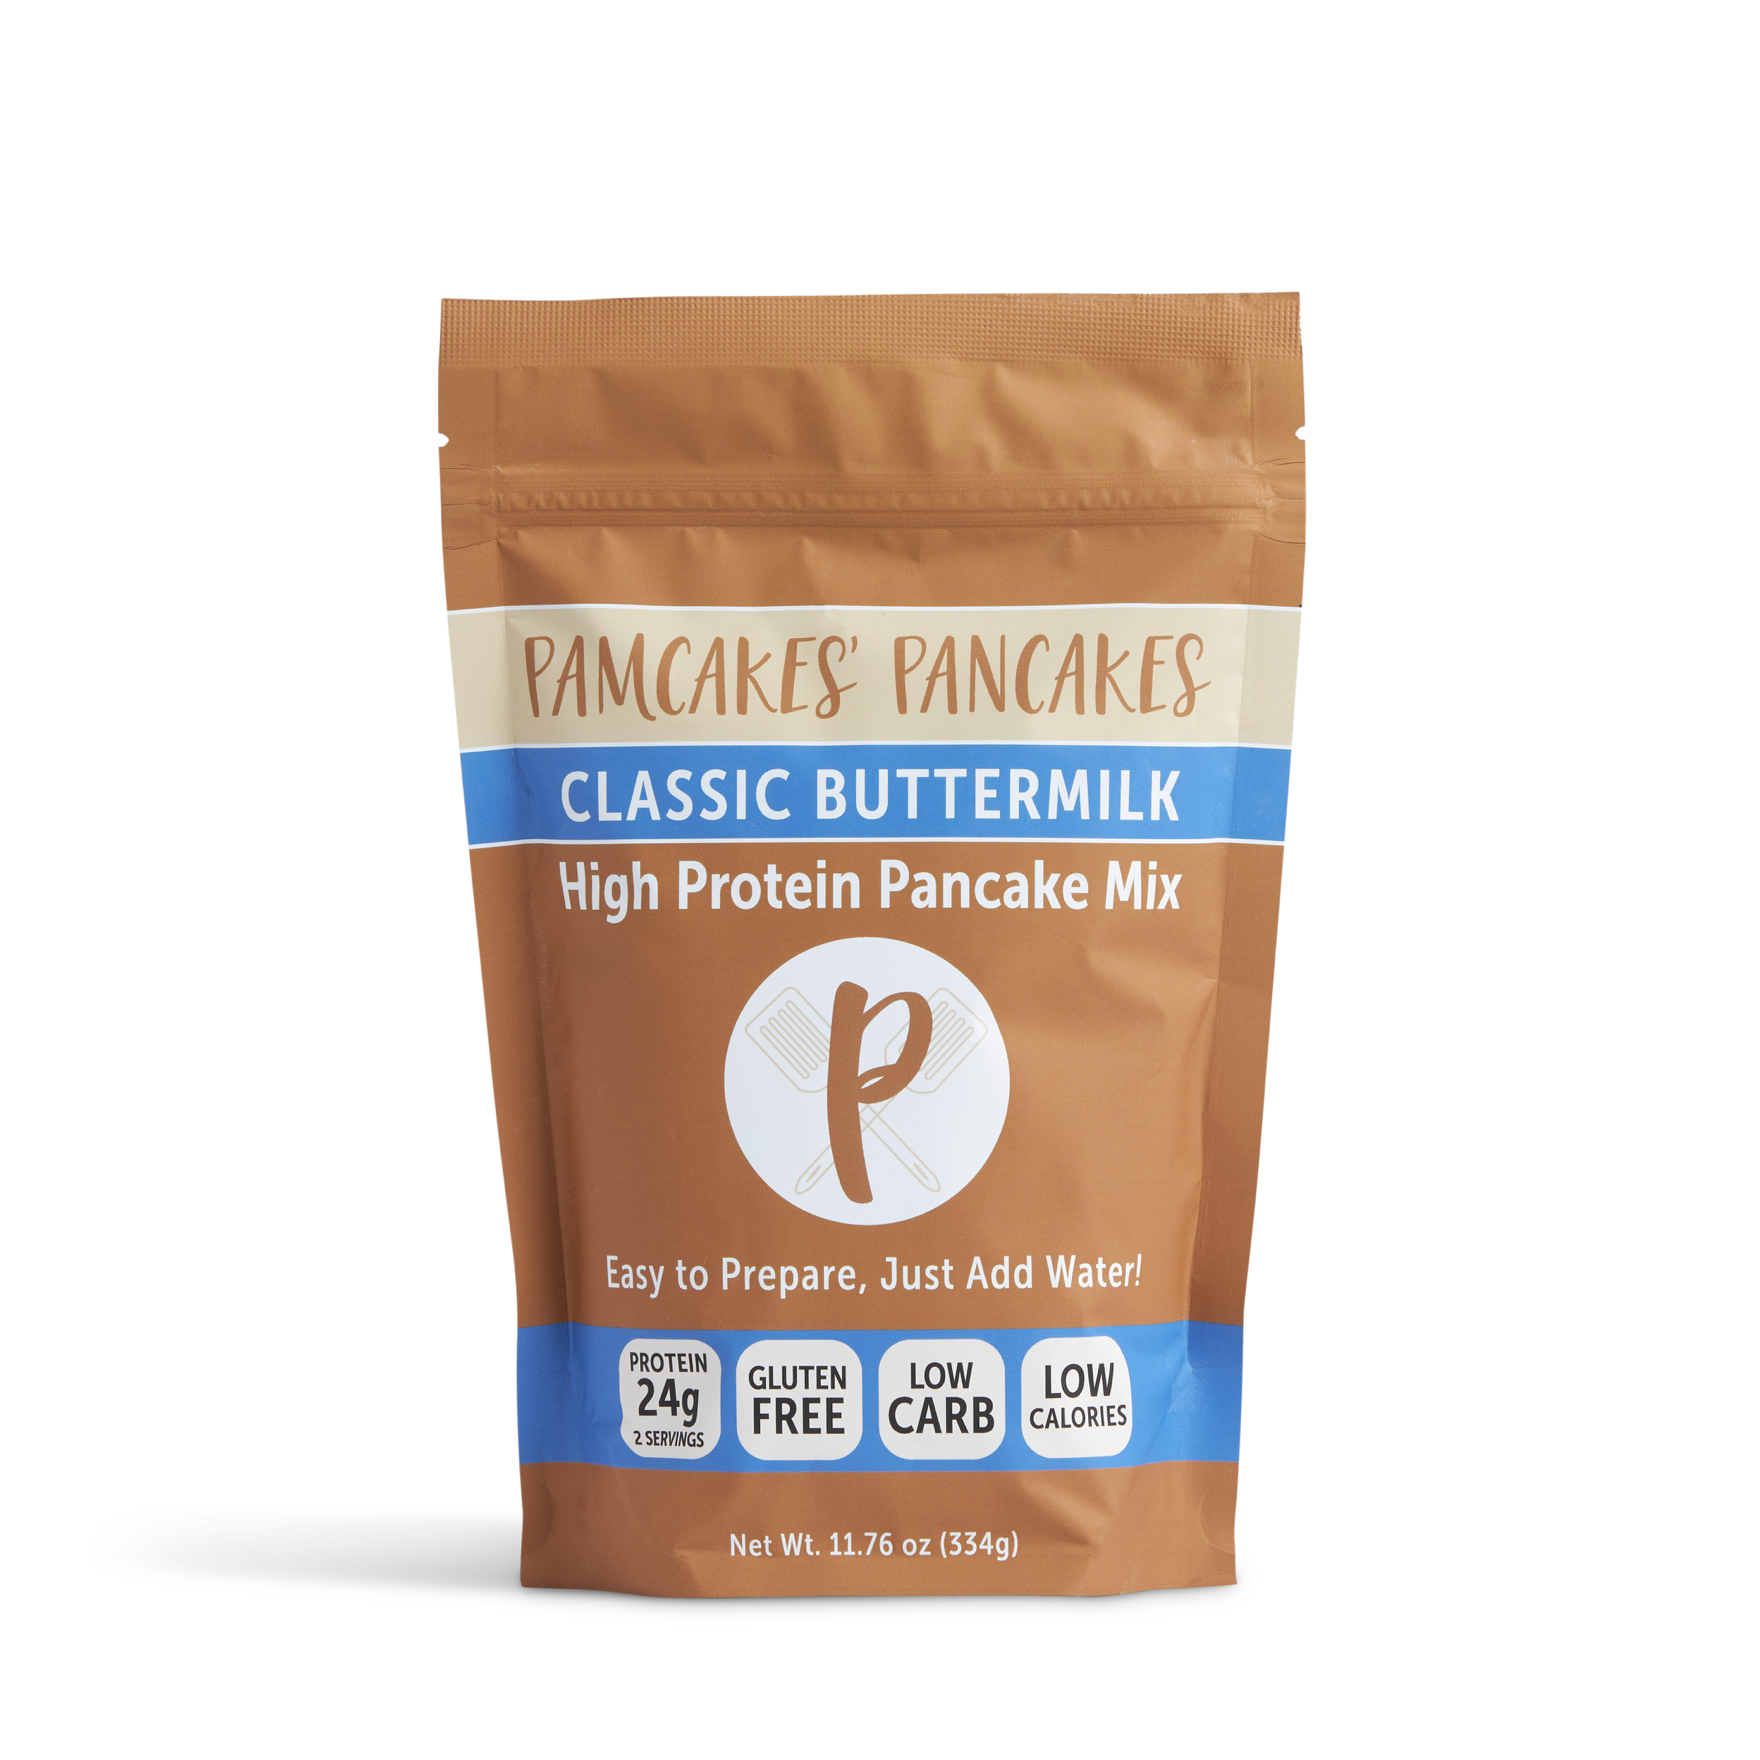 Classic Buttermilk Pancake Mix – Pamcakes' Pancakes